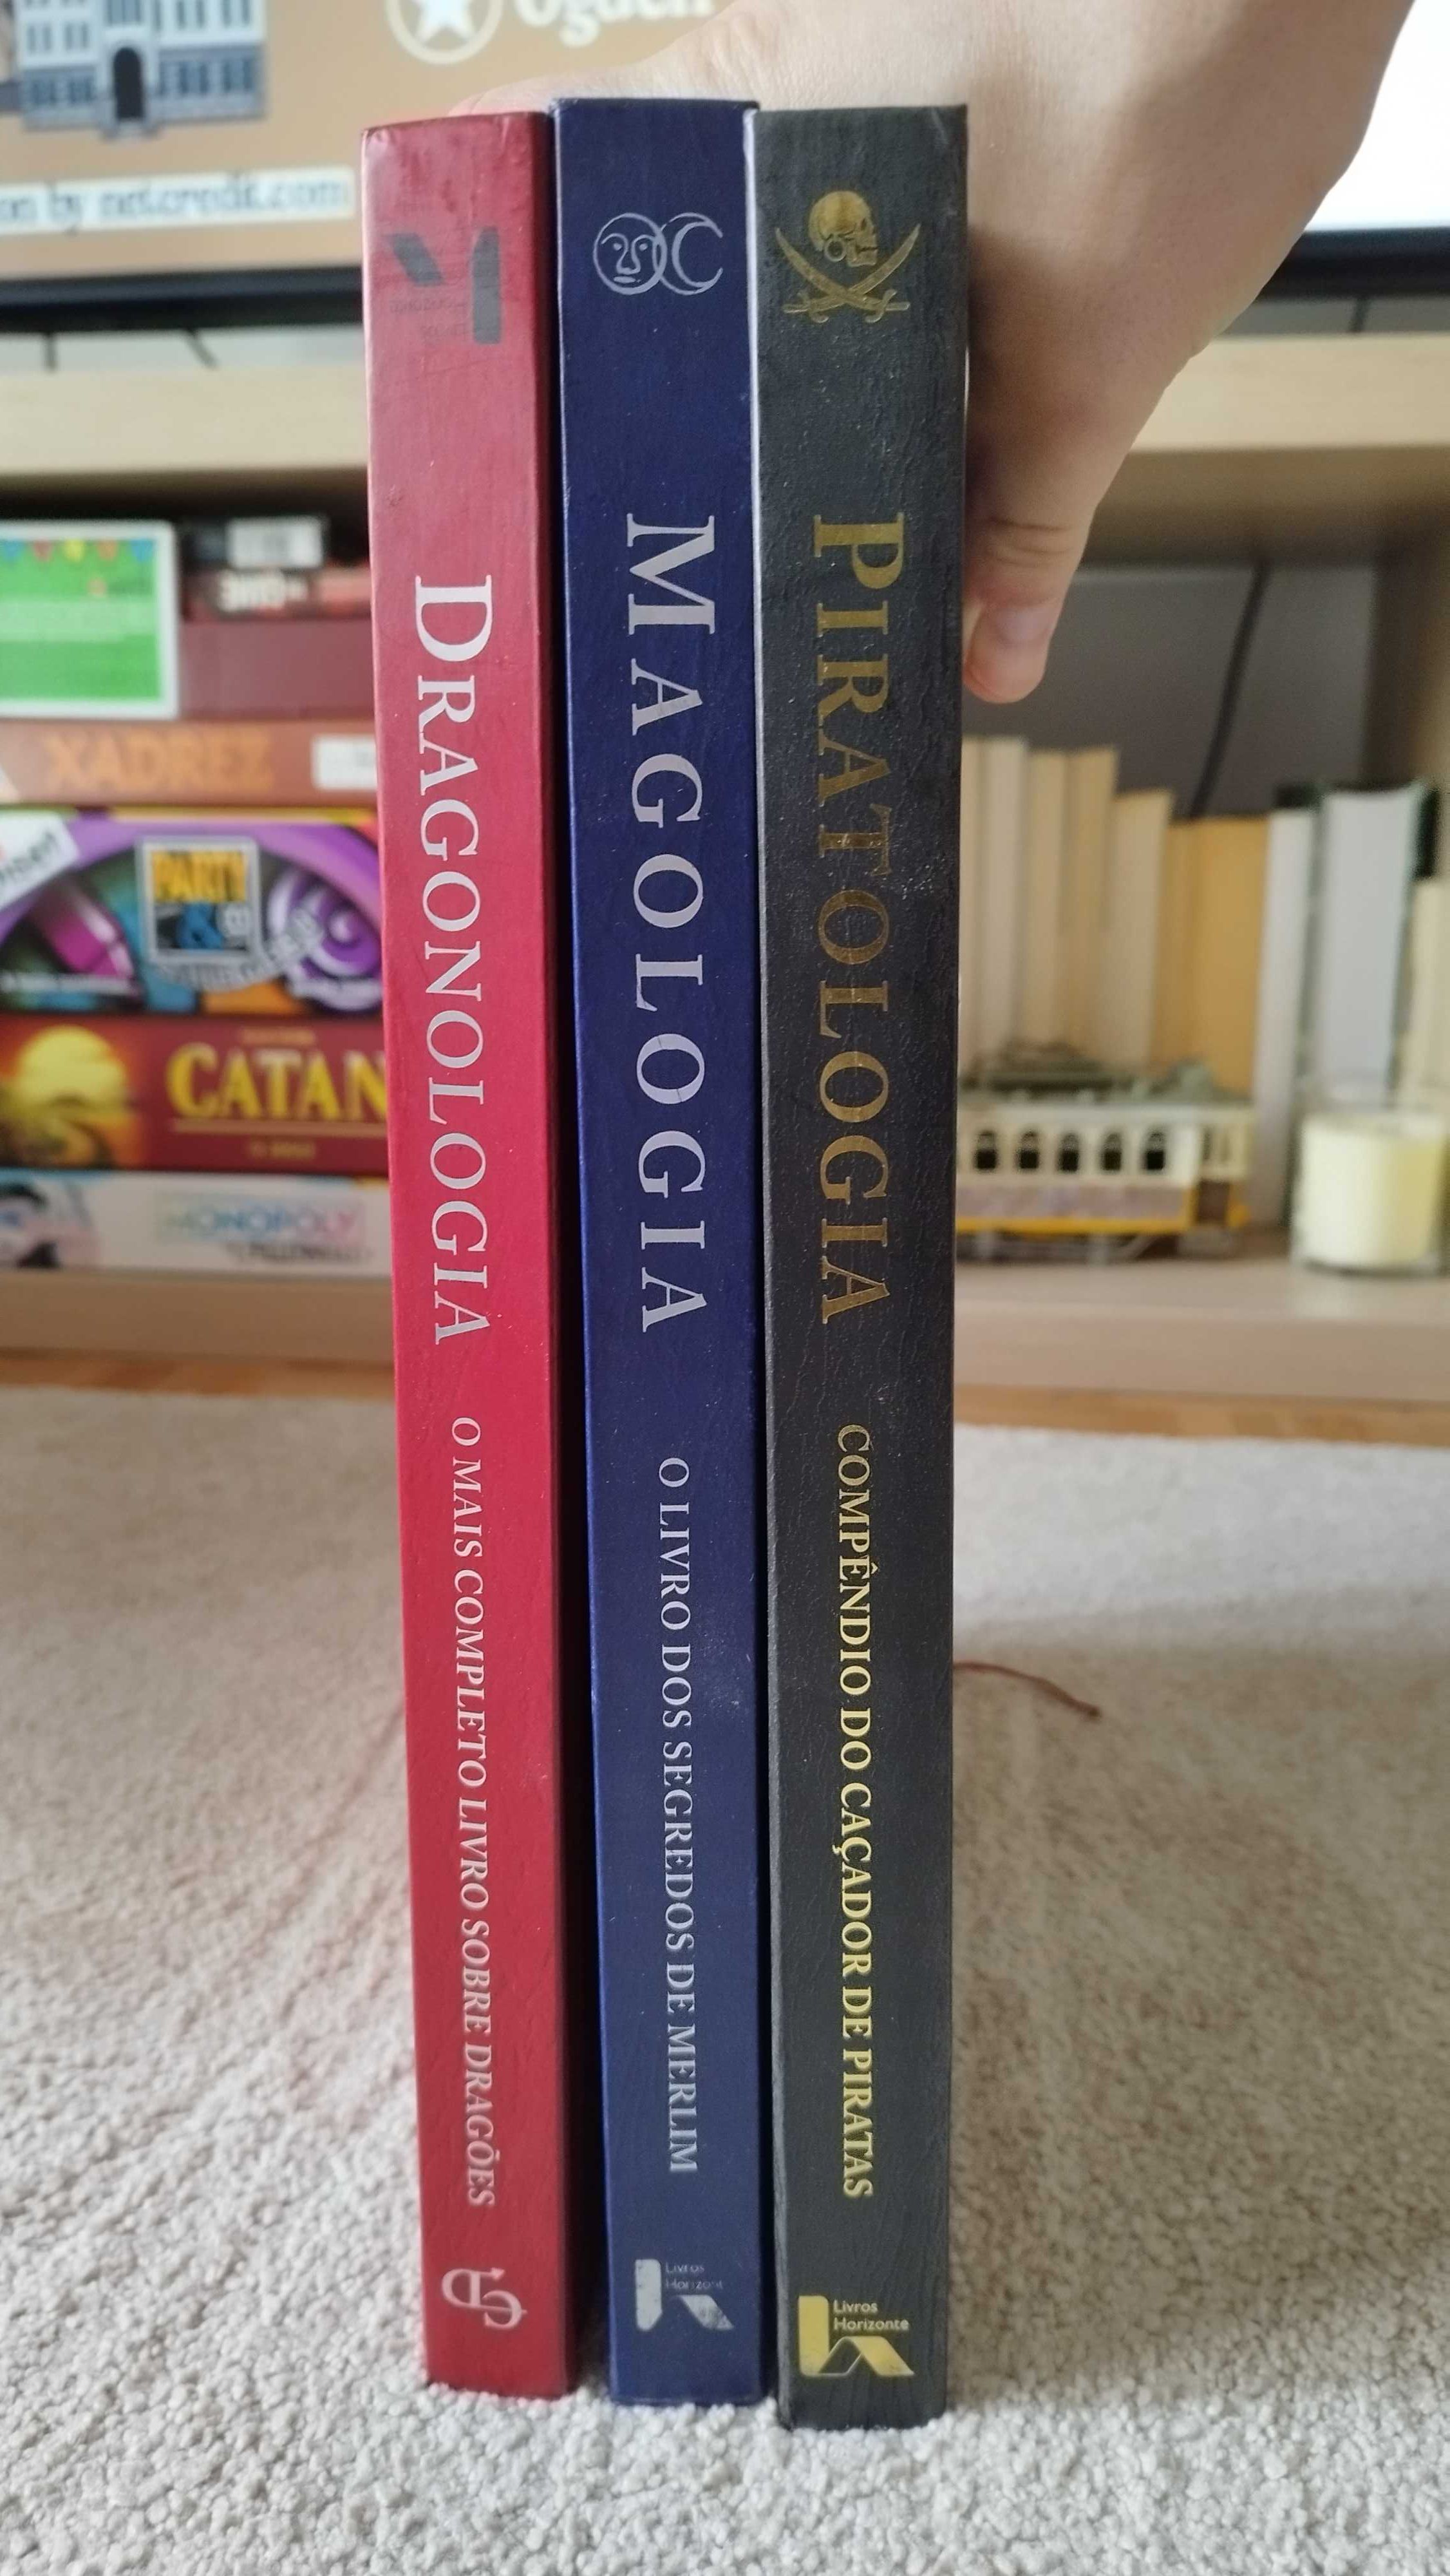 Piratologia, Magologia, Dragonologia - Livros Horizonte